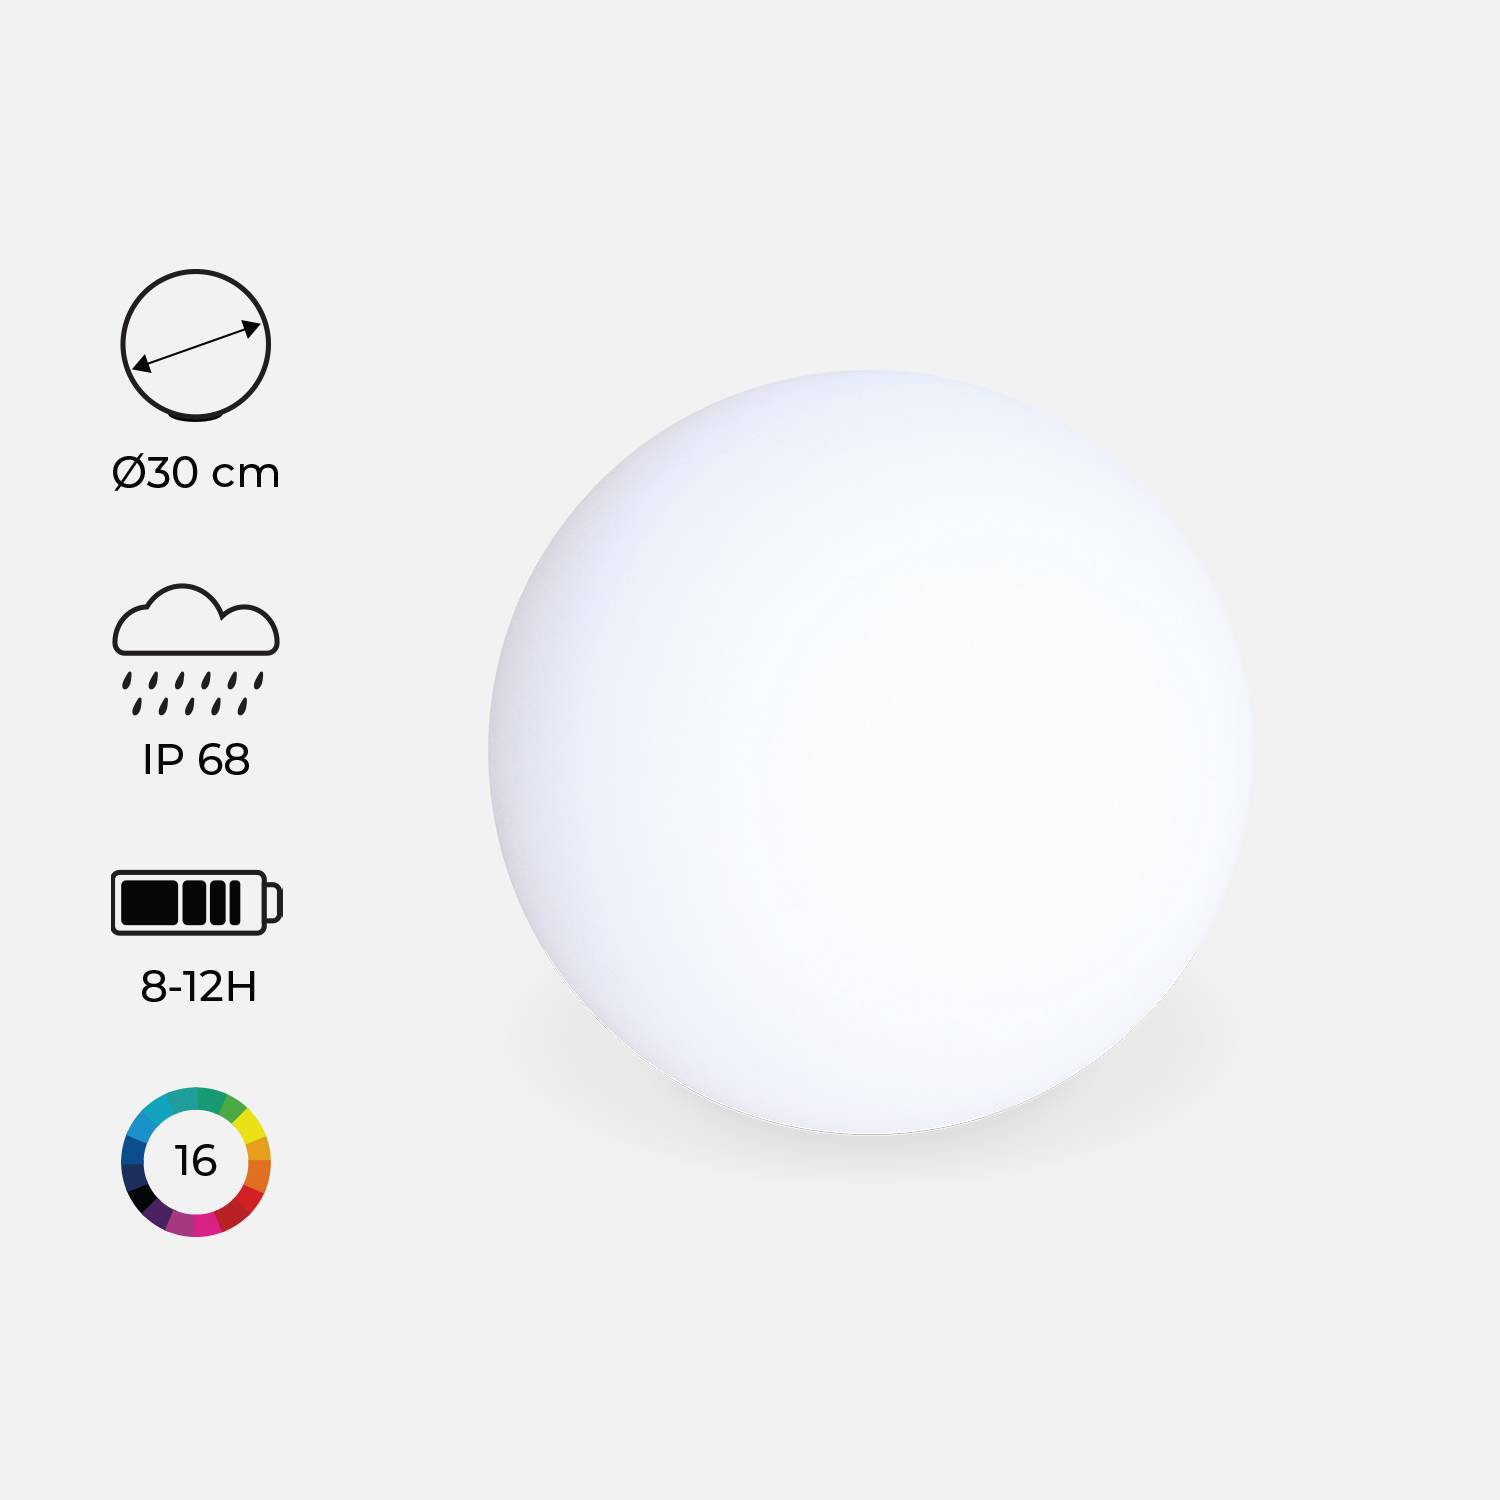 Iluminação exterior, LED para jardim, 30 cm, esfera luminosa multicolor recarregável sem cabos - 16 cores - ESFERA DE ILUMINAÇÃO LED, Ø 30 CM Photo2